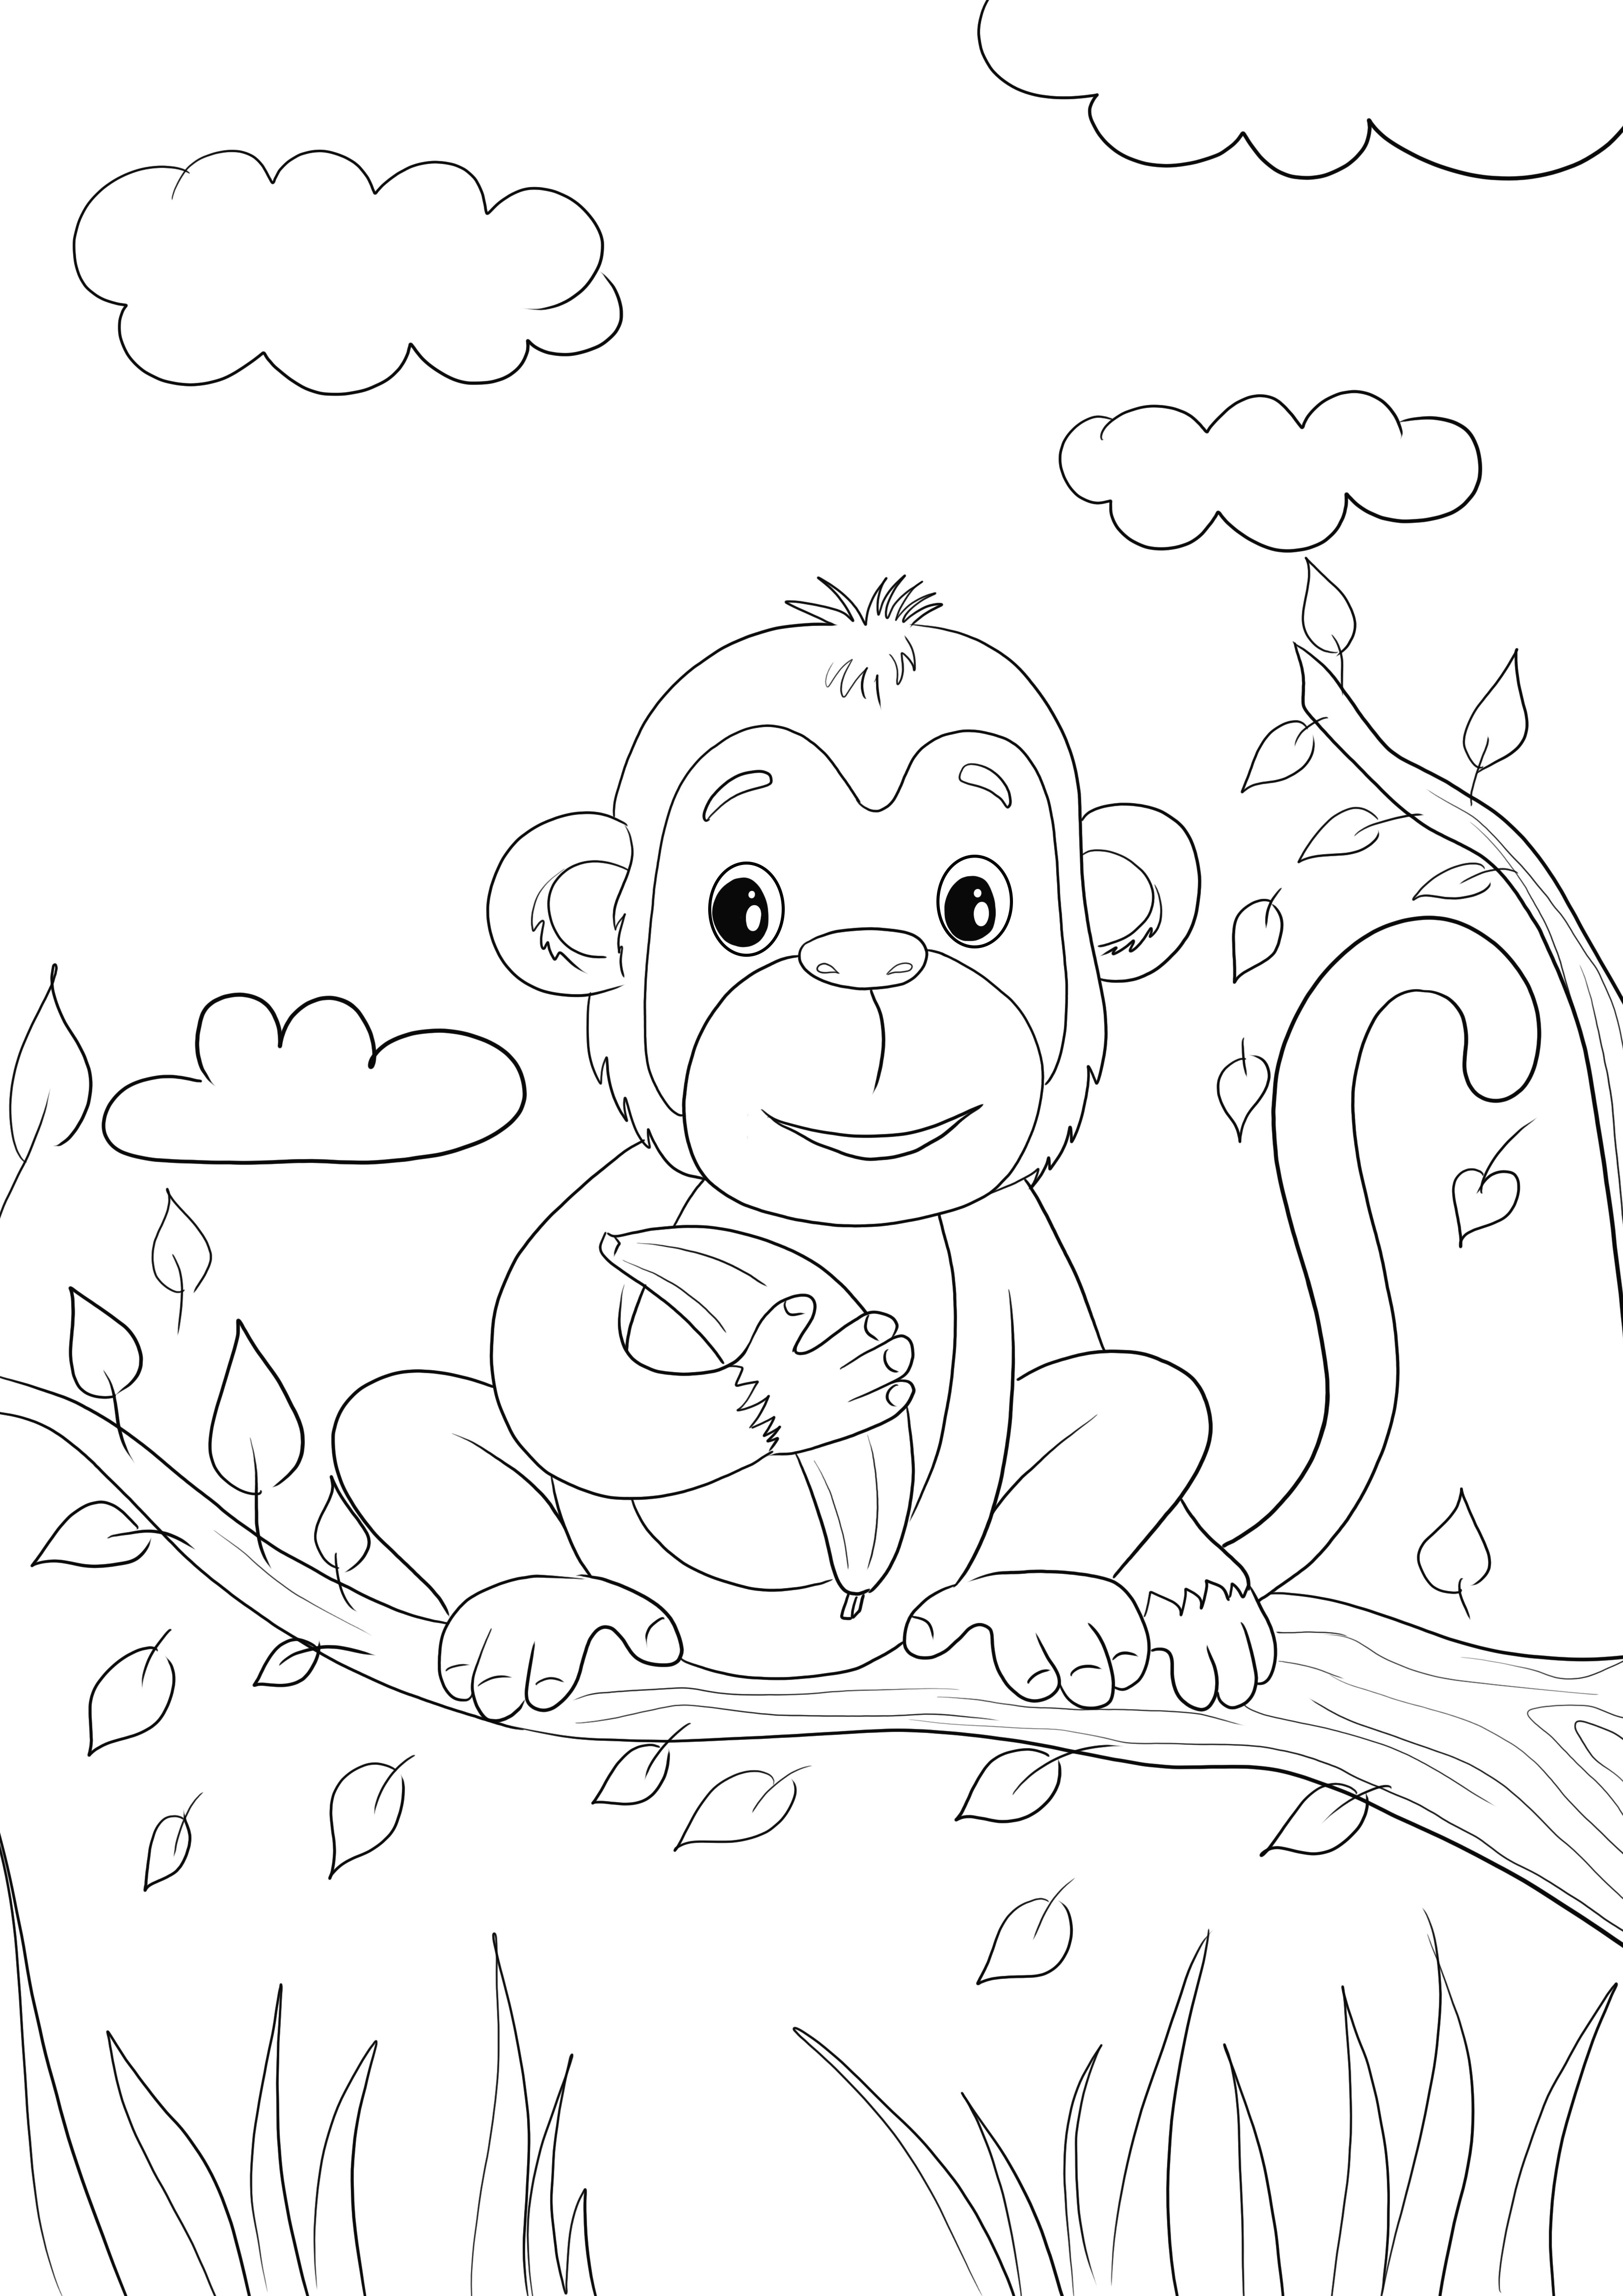 Aqui está um macaco bebê fofo segurando uma imagem de coloração de banana grátis para imprimir ou salvar para mais tarde